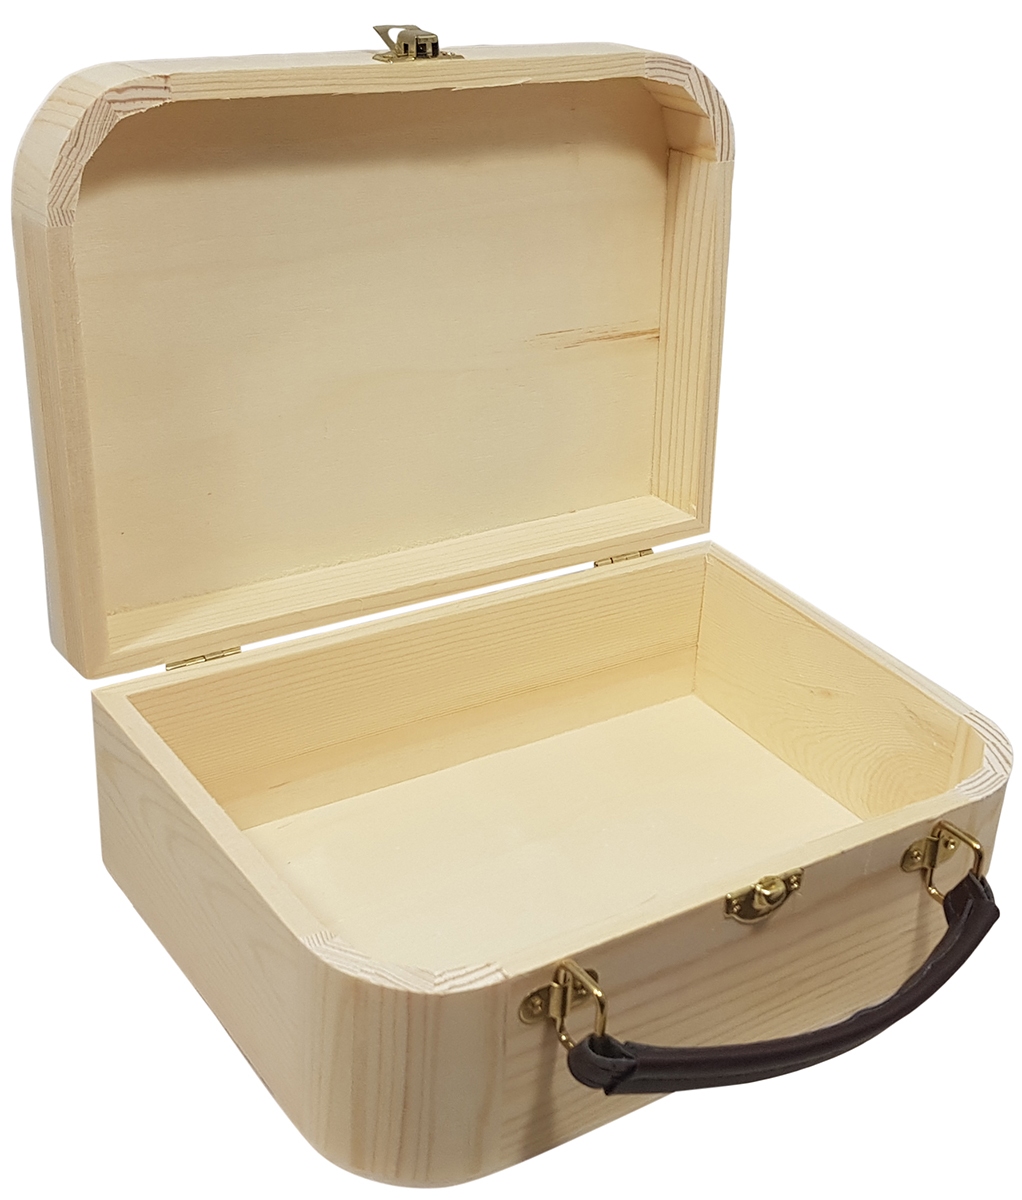 Kist / Koffertje met leren handvat grenen (9985)